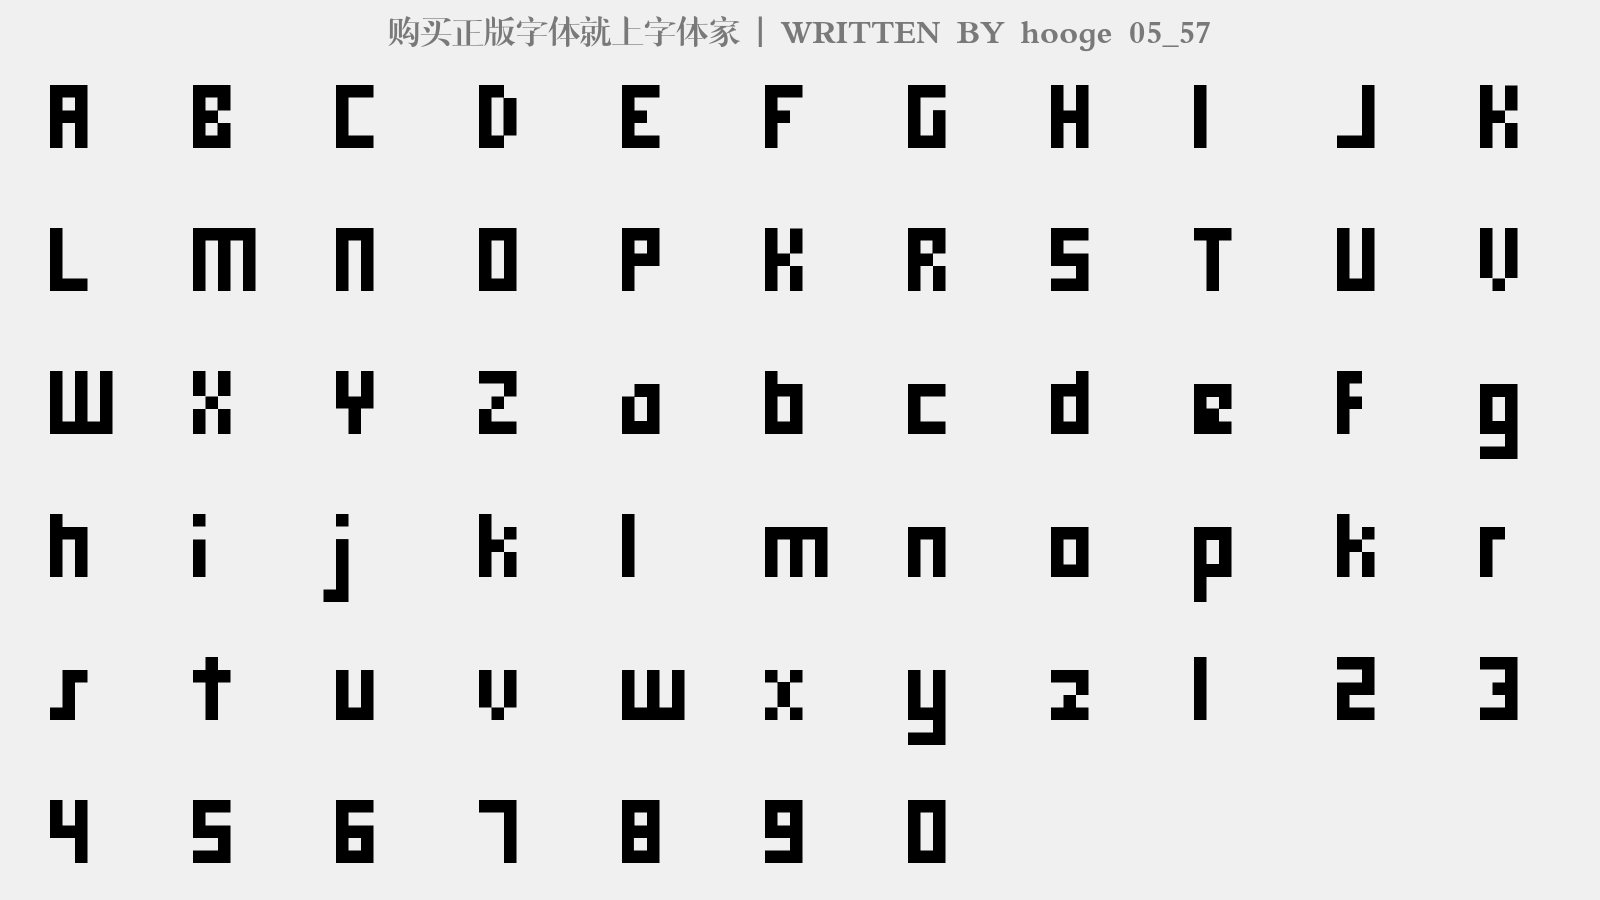 hooge 05_57 - 大写字母/小写字母/数字